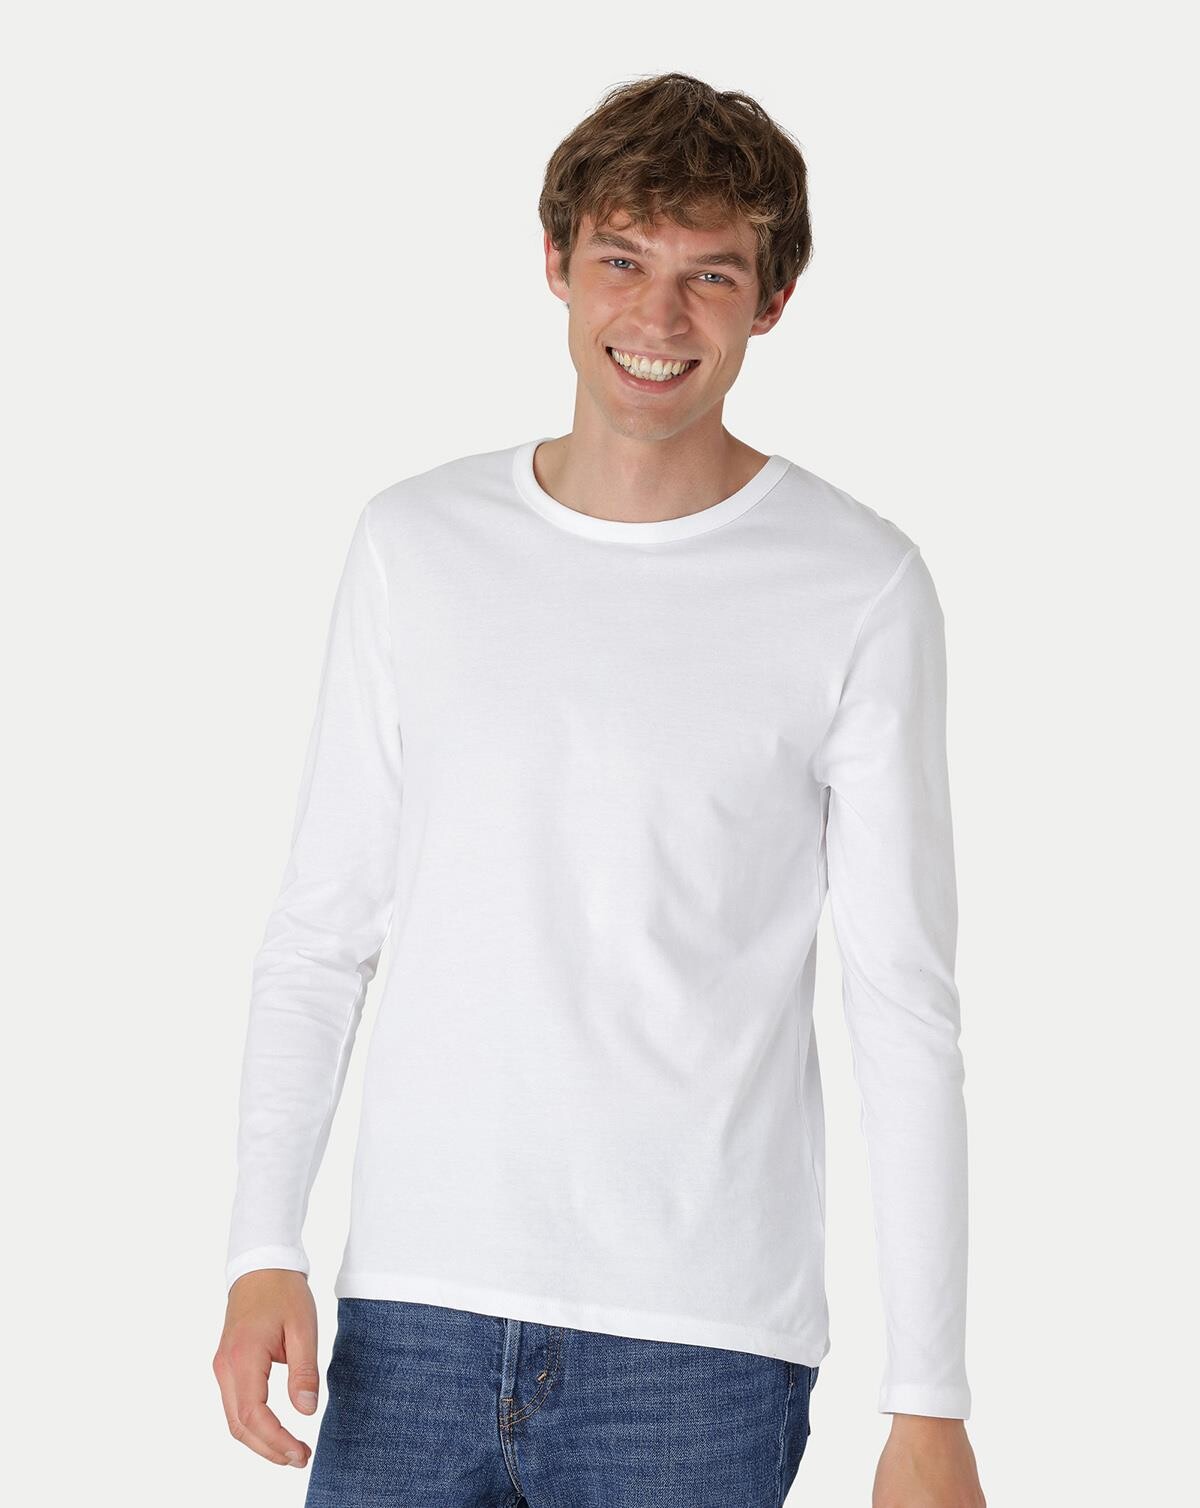 Neutral Økologisk Langærmet T-shirt (Hvid, XL)